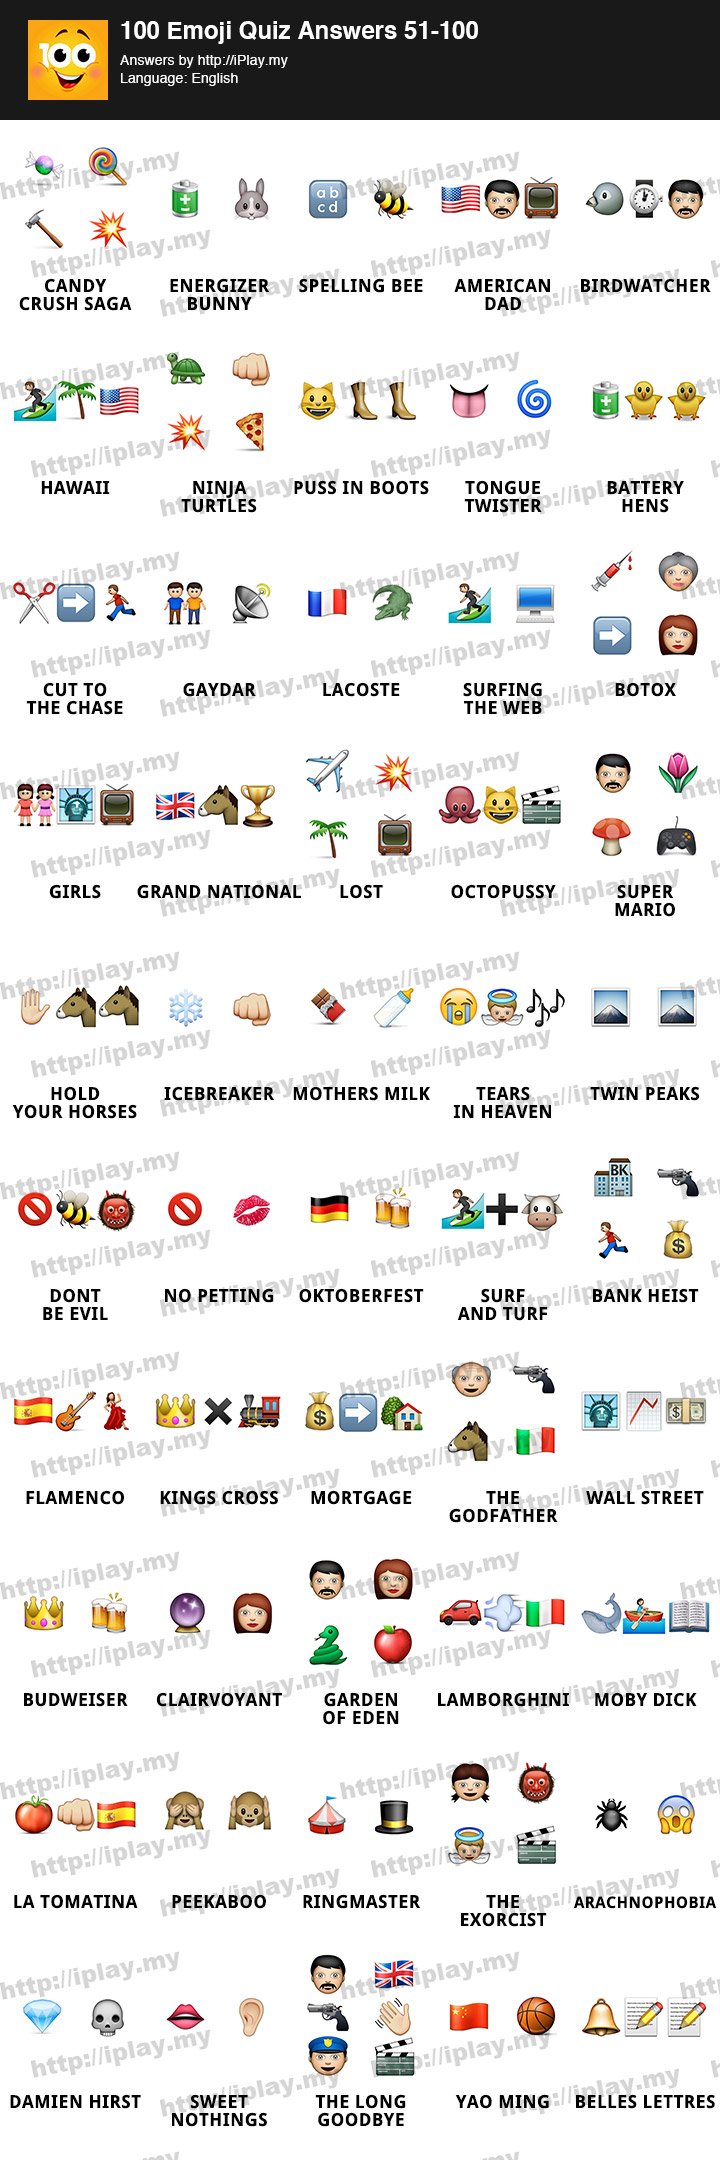 100-Emoji-Quiz-Answers-51-100